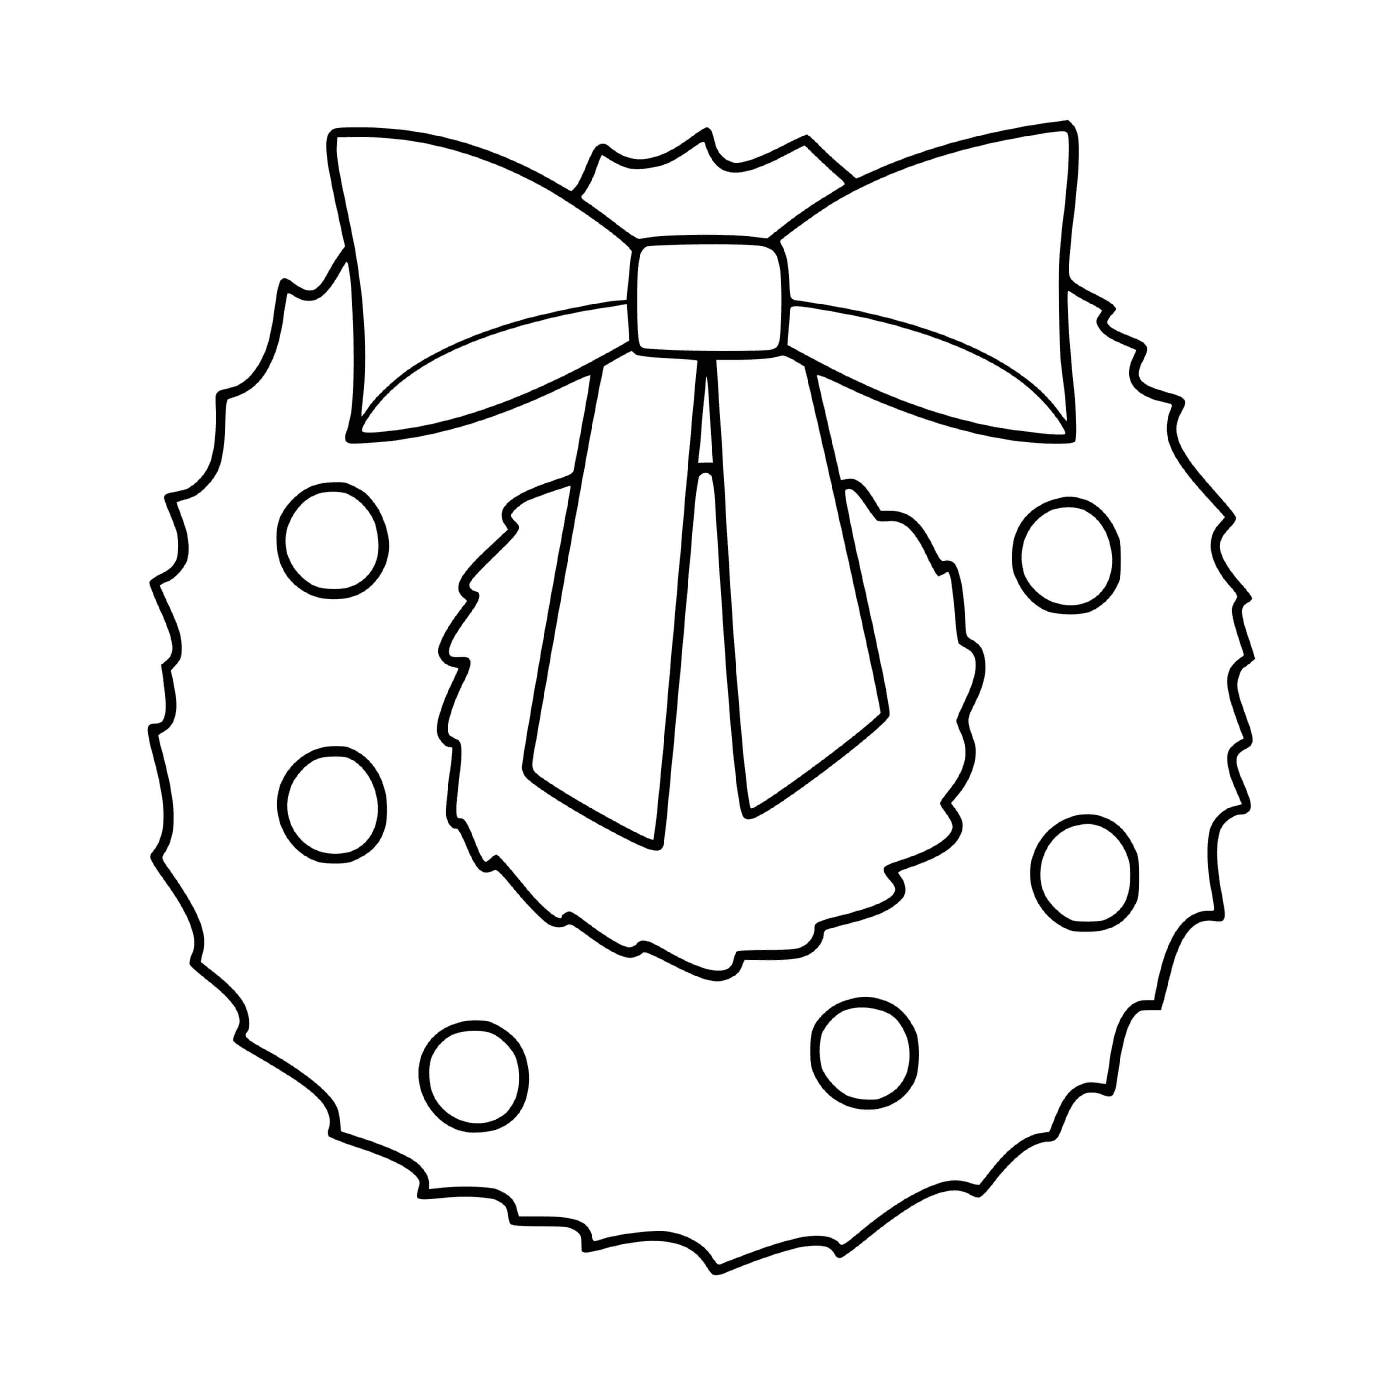  Eine Weihnachtskrone mit einem Knoten verziert 